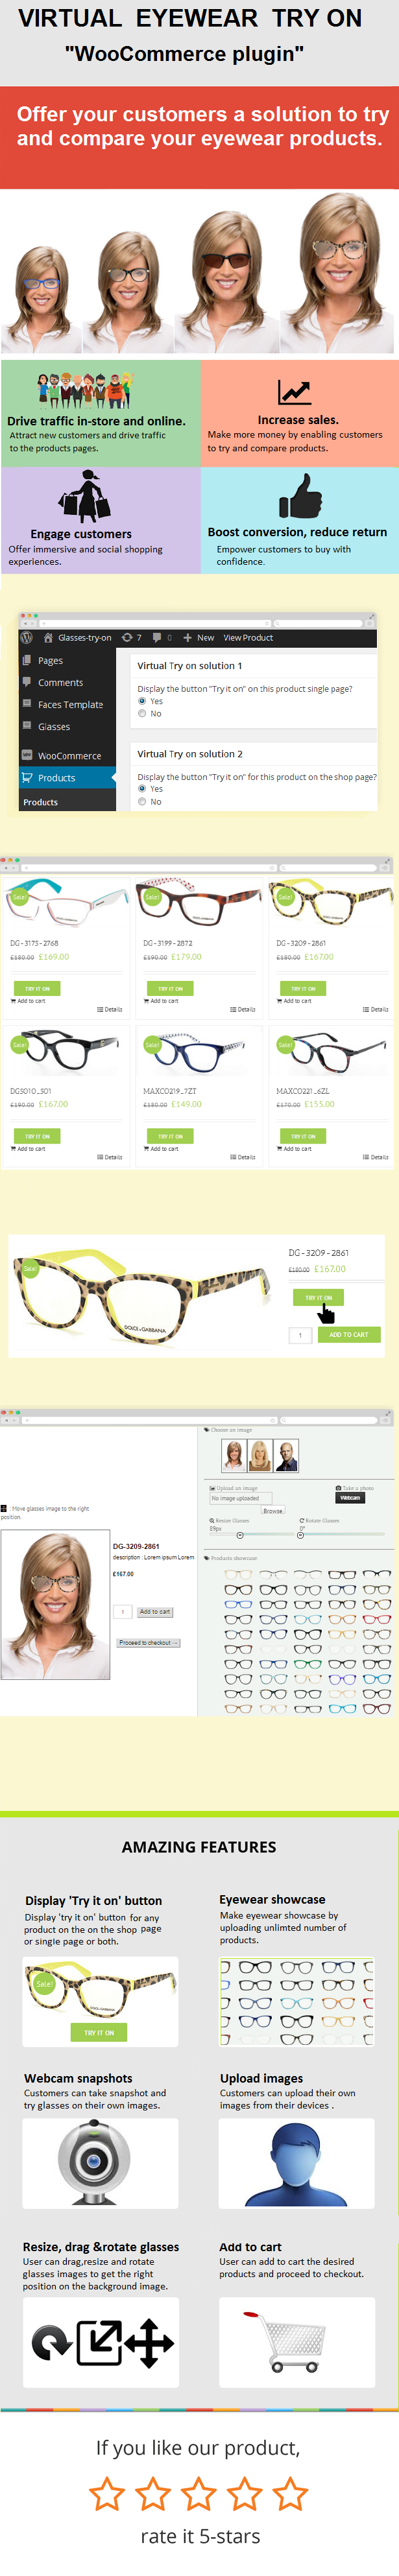 WooCommerce Eyewear Virtual Try-on Popup - 1